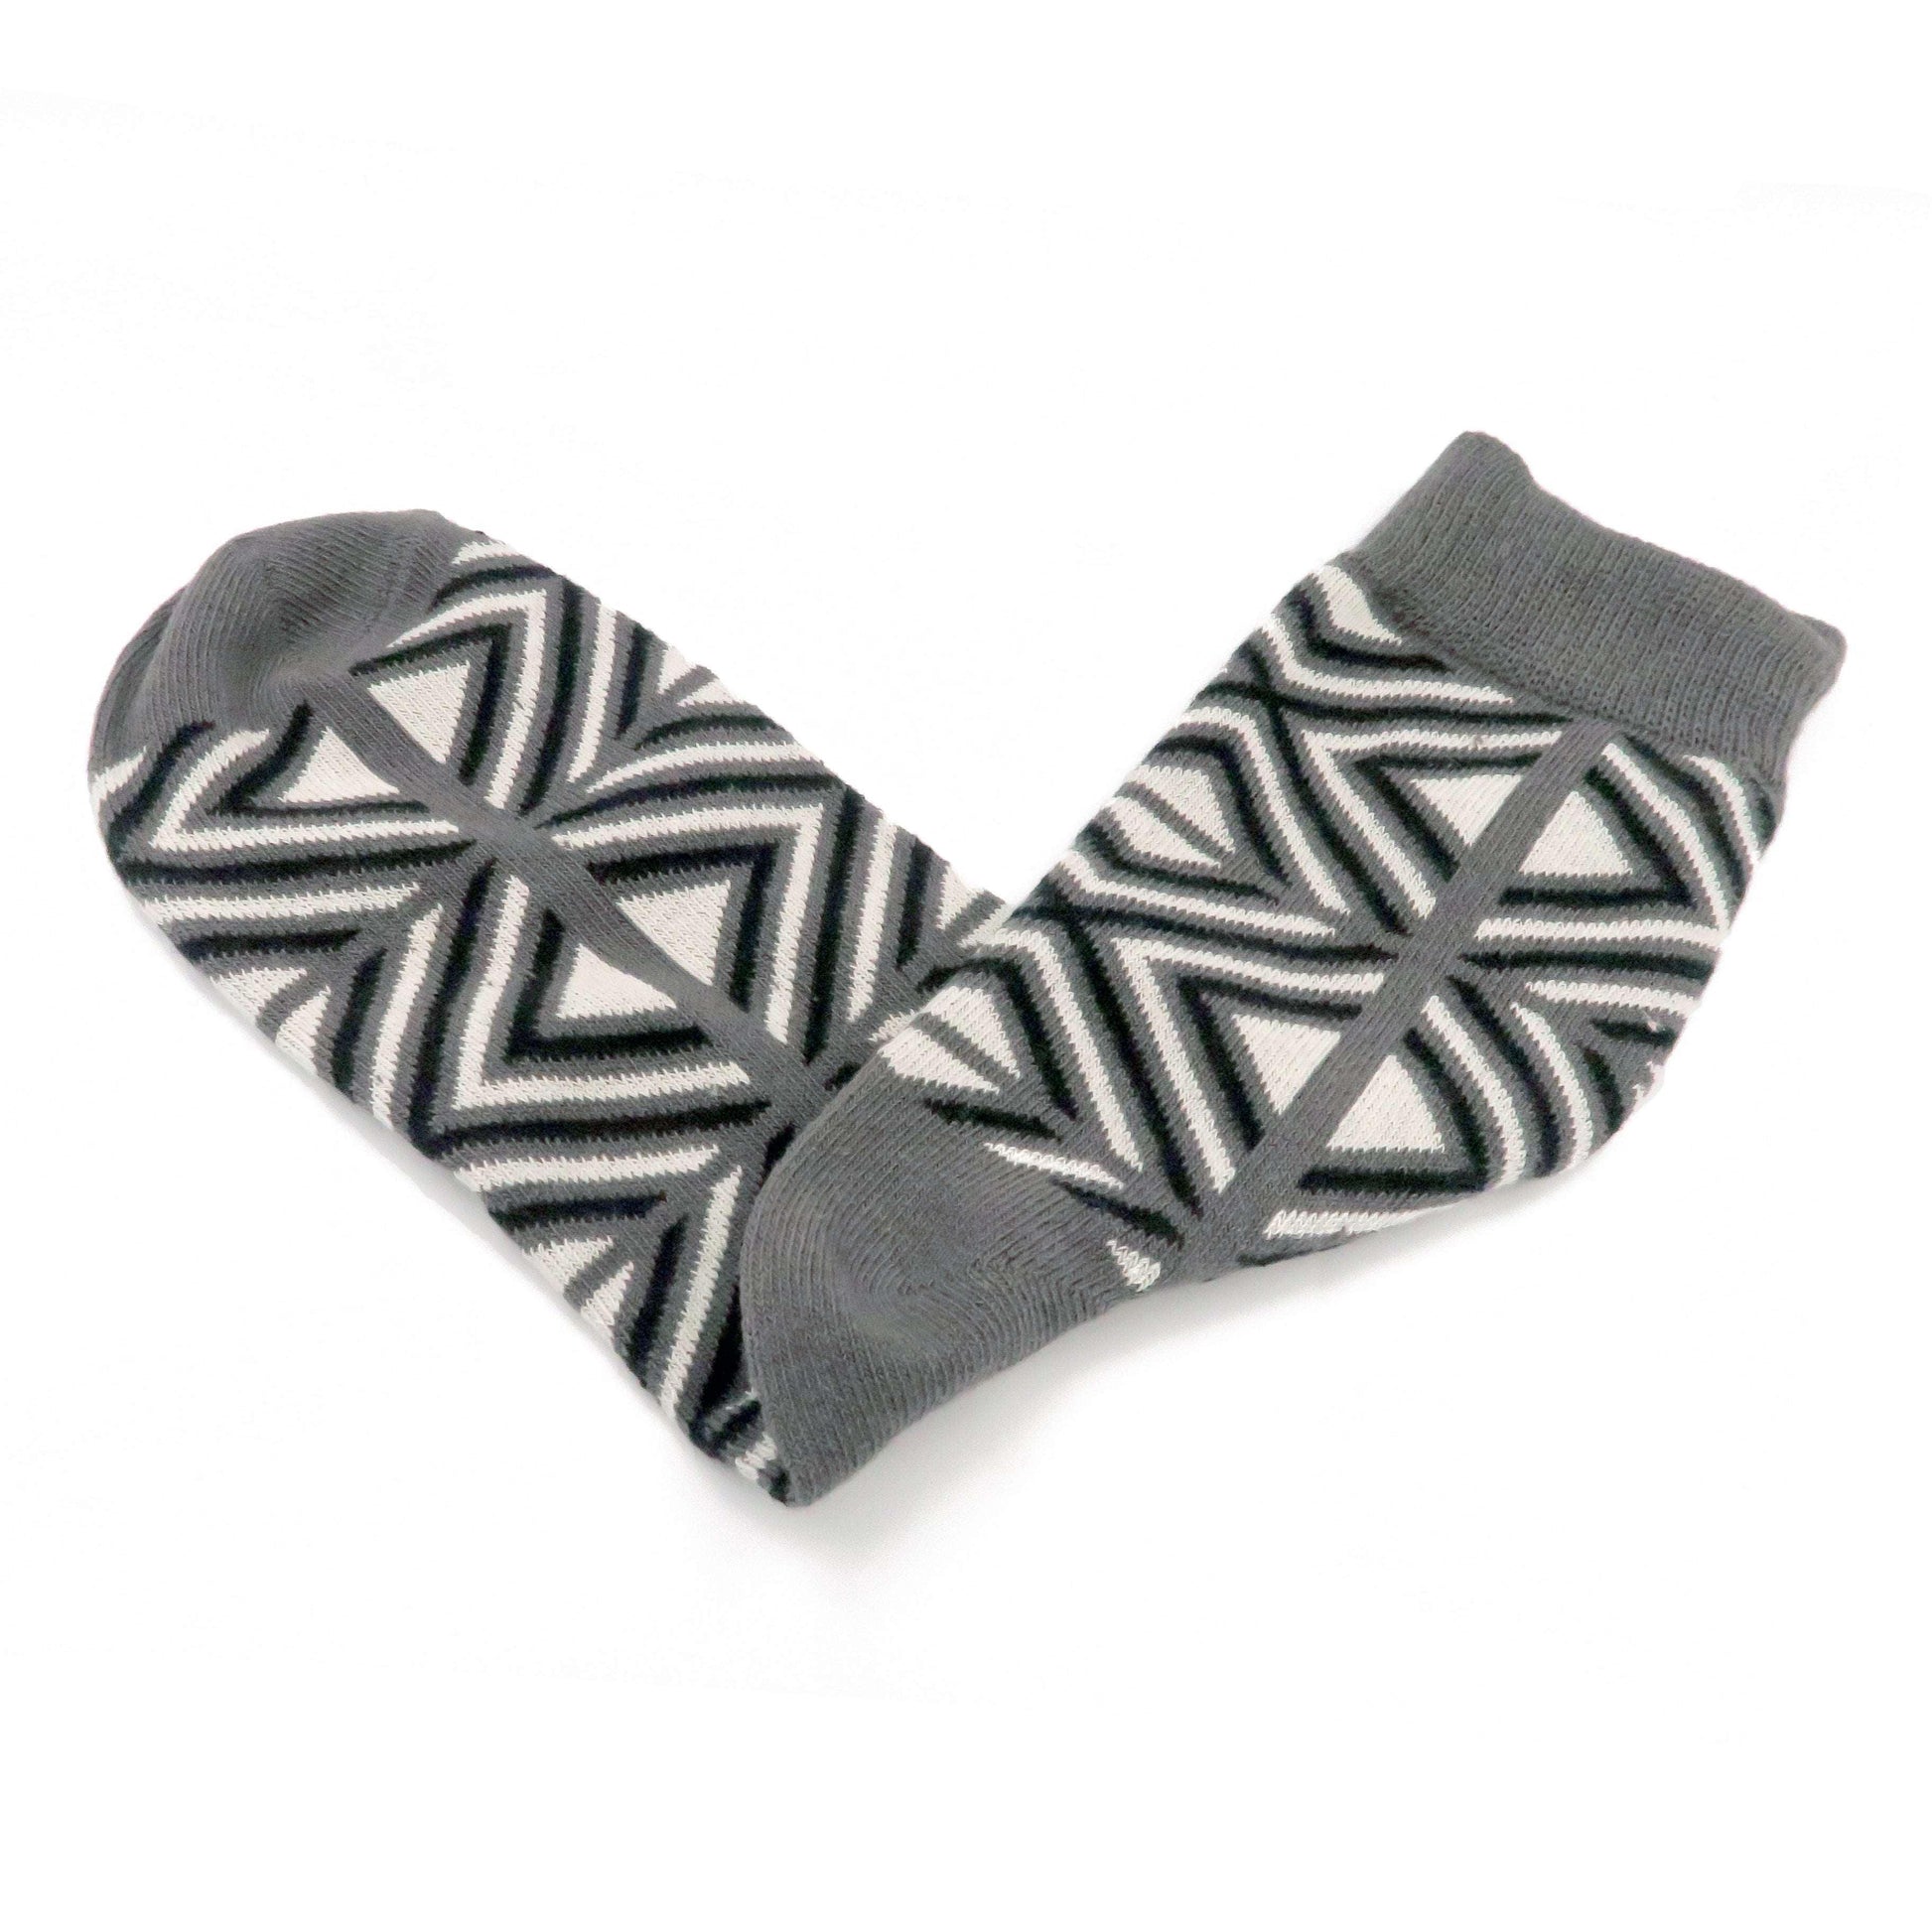 grey - lost in square socks unisex comfysocks